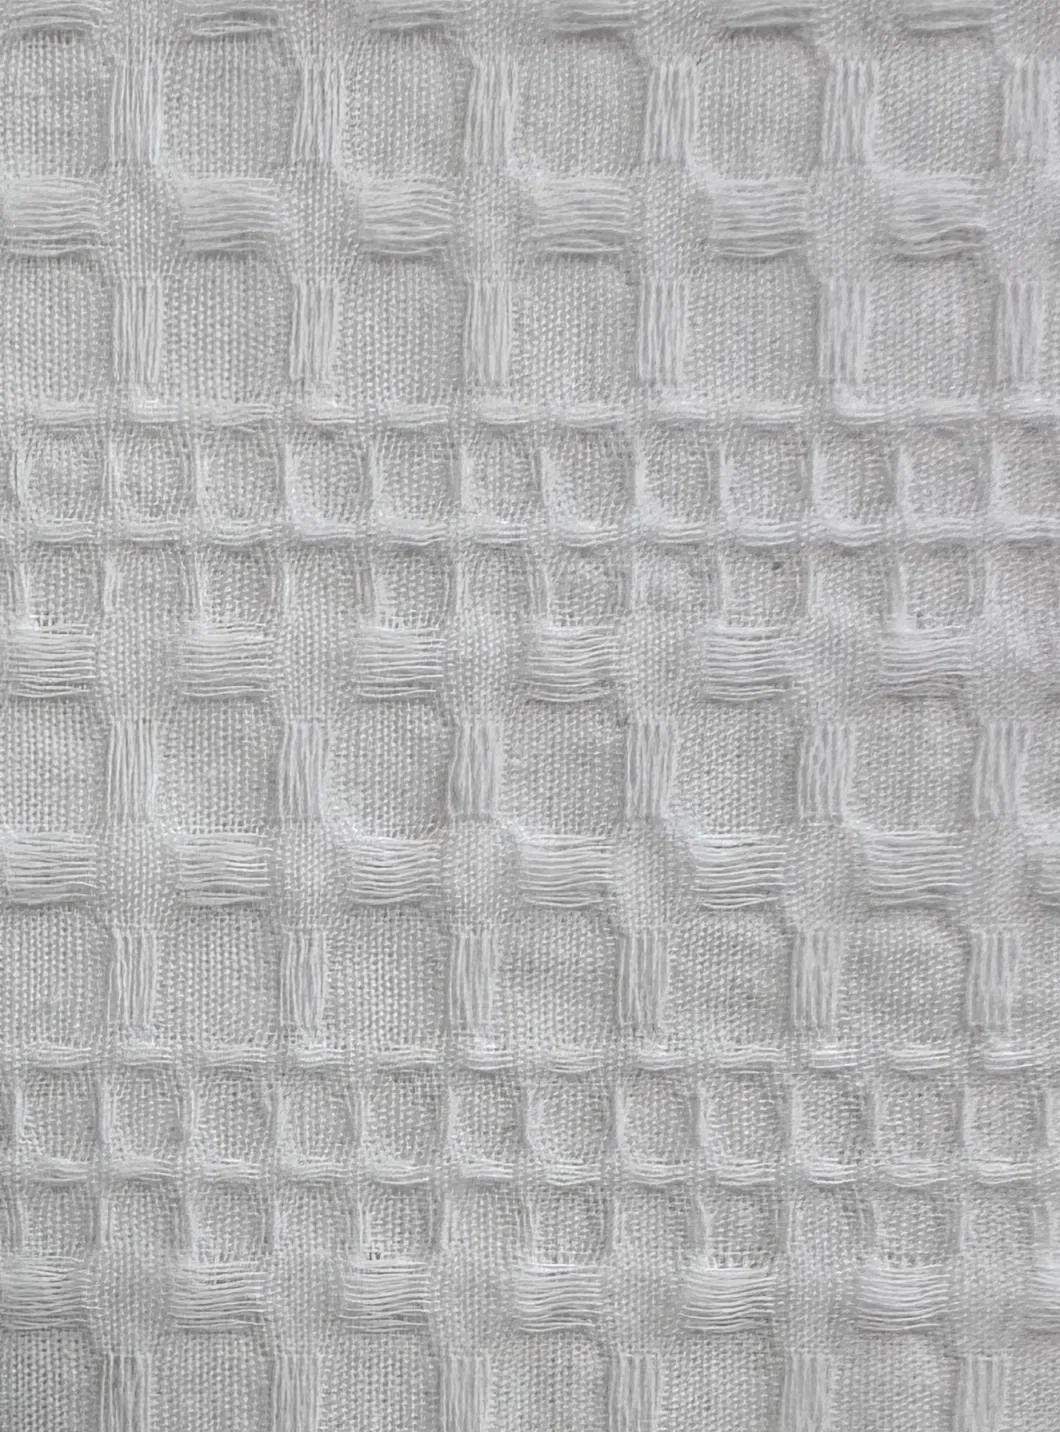 72 X 72 Hotel Quality Bathroom Waffle Weave Yarn Dyed Heavy-Duty Polyester Fabric Shower Curtain